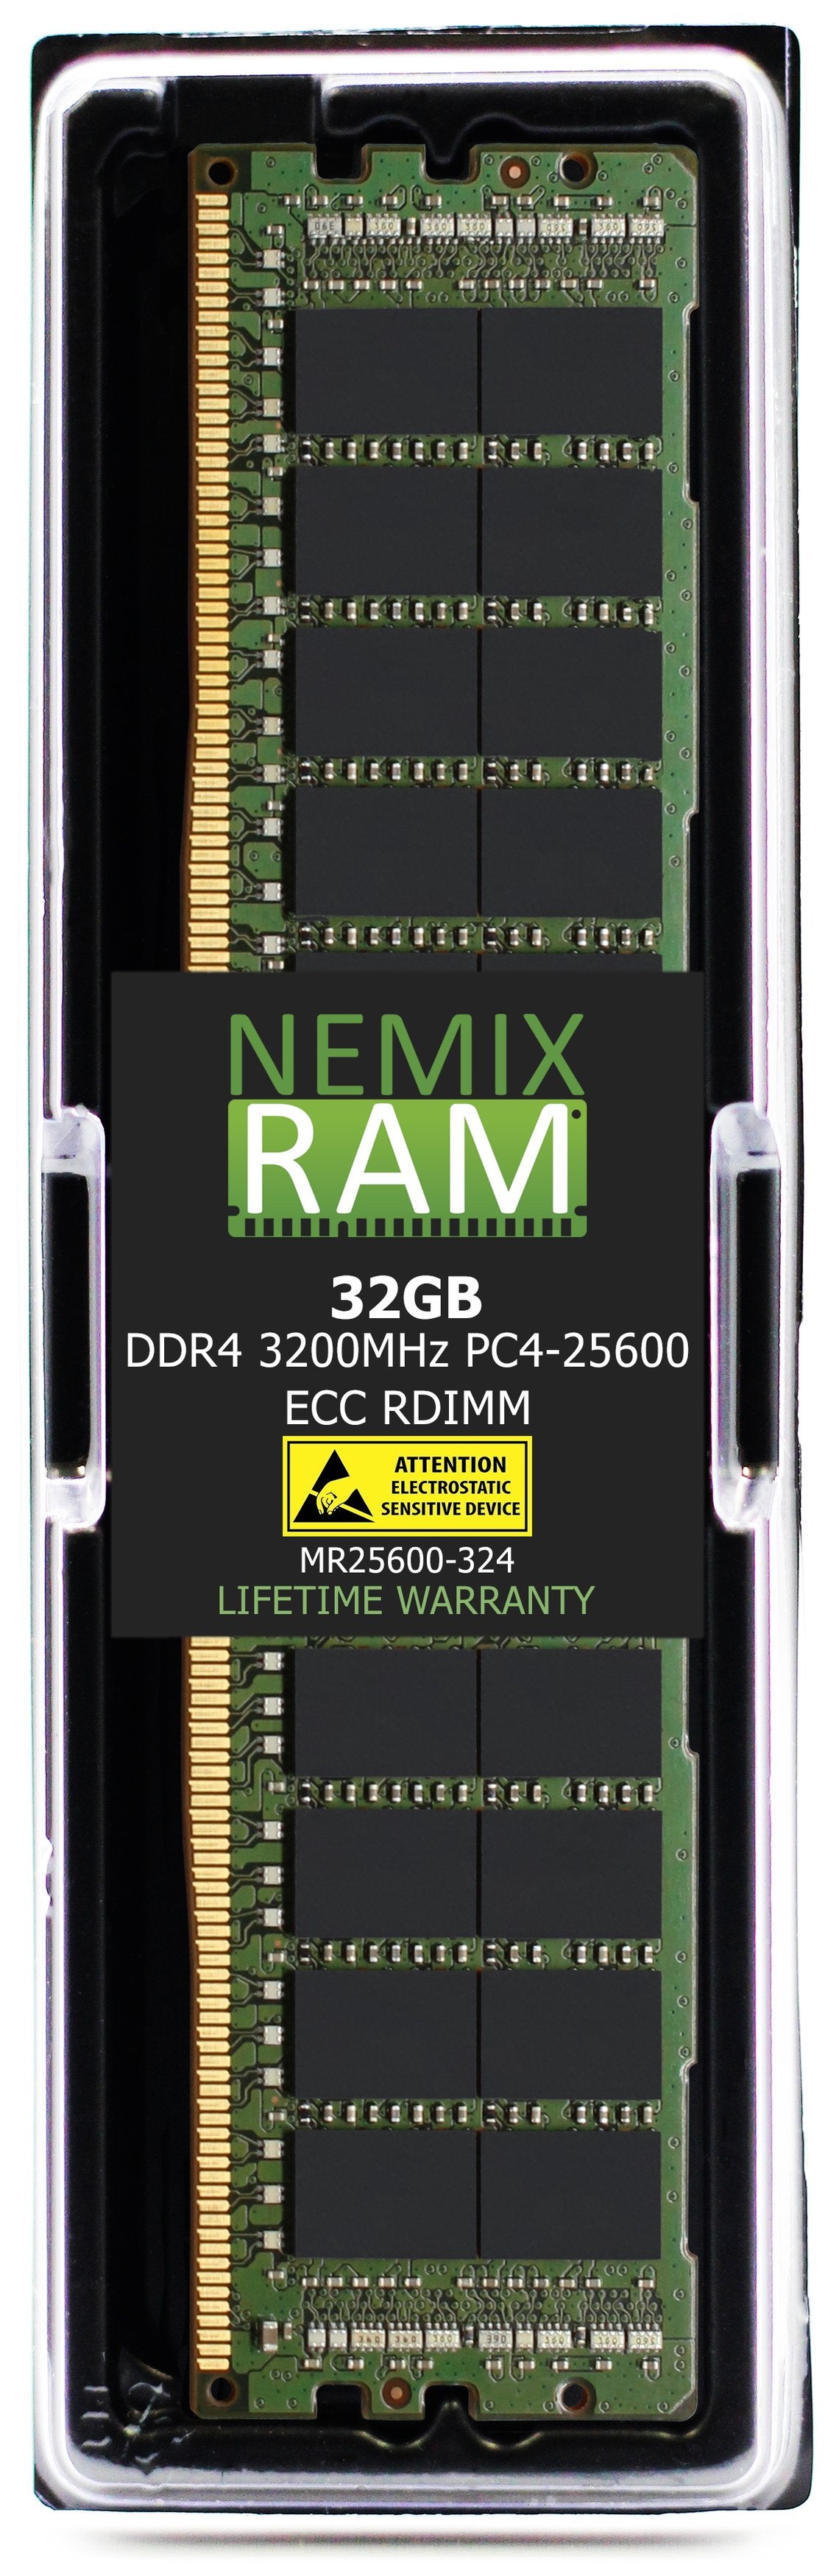 32GB DDR4 3200MHZ PC4-25600 RDIMM Compatible with Supermicro MEM-DR432L-CL04-ER32